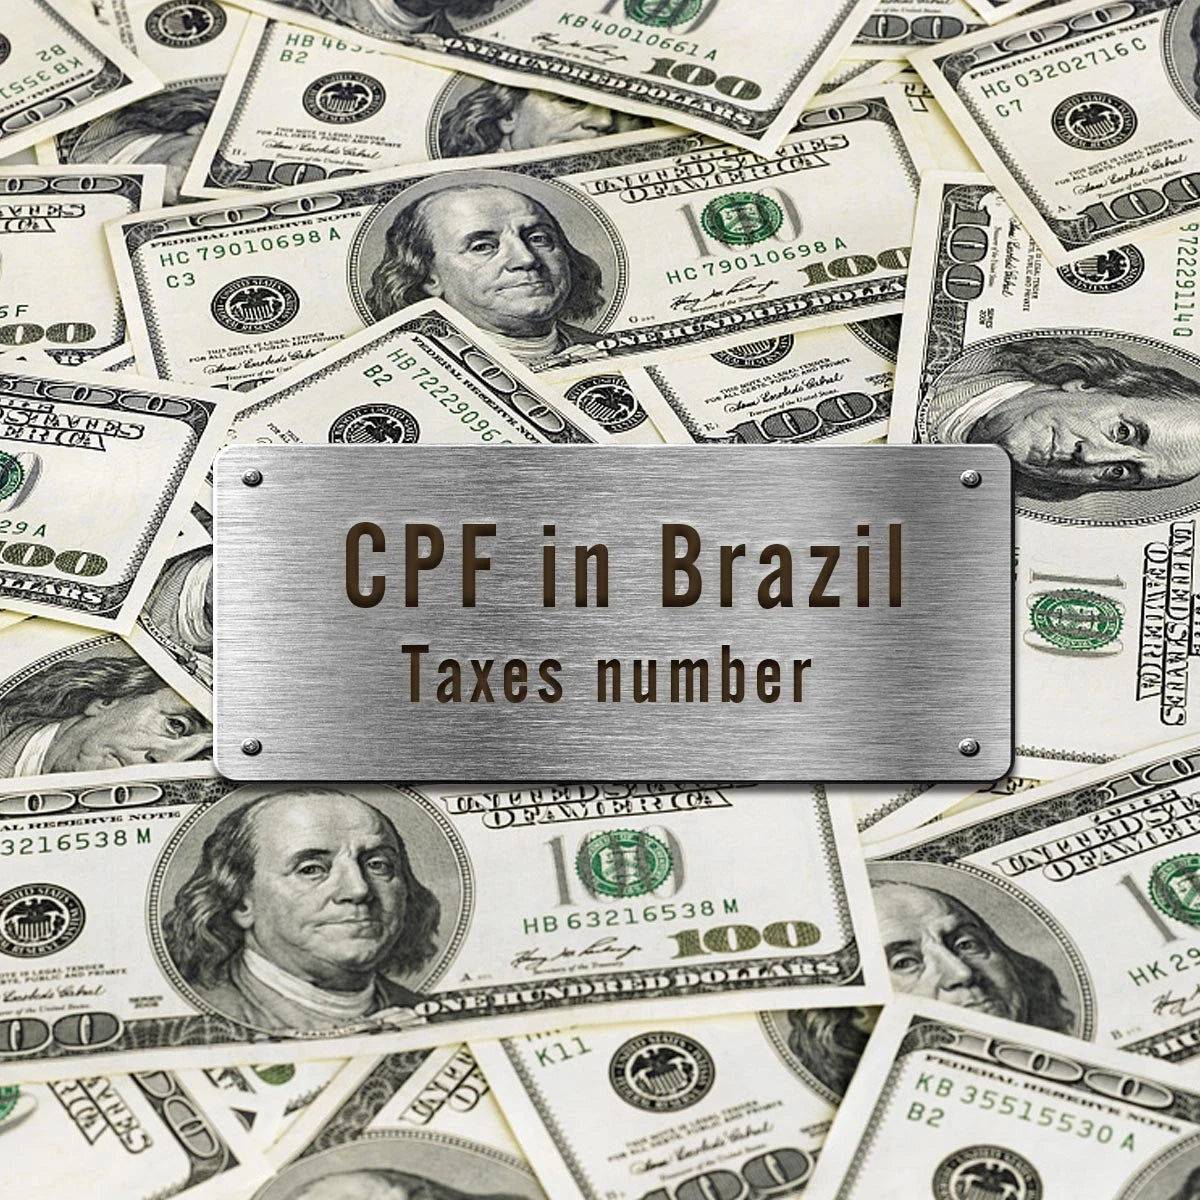 すべての注文 (ブラジル) には納税者番号 (CPF) が必要です